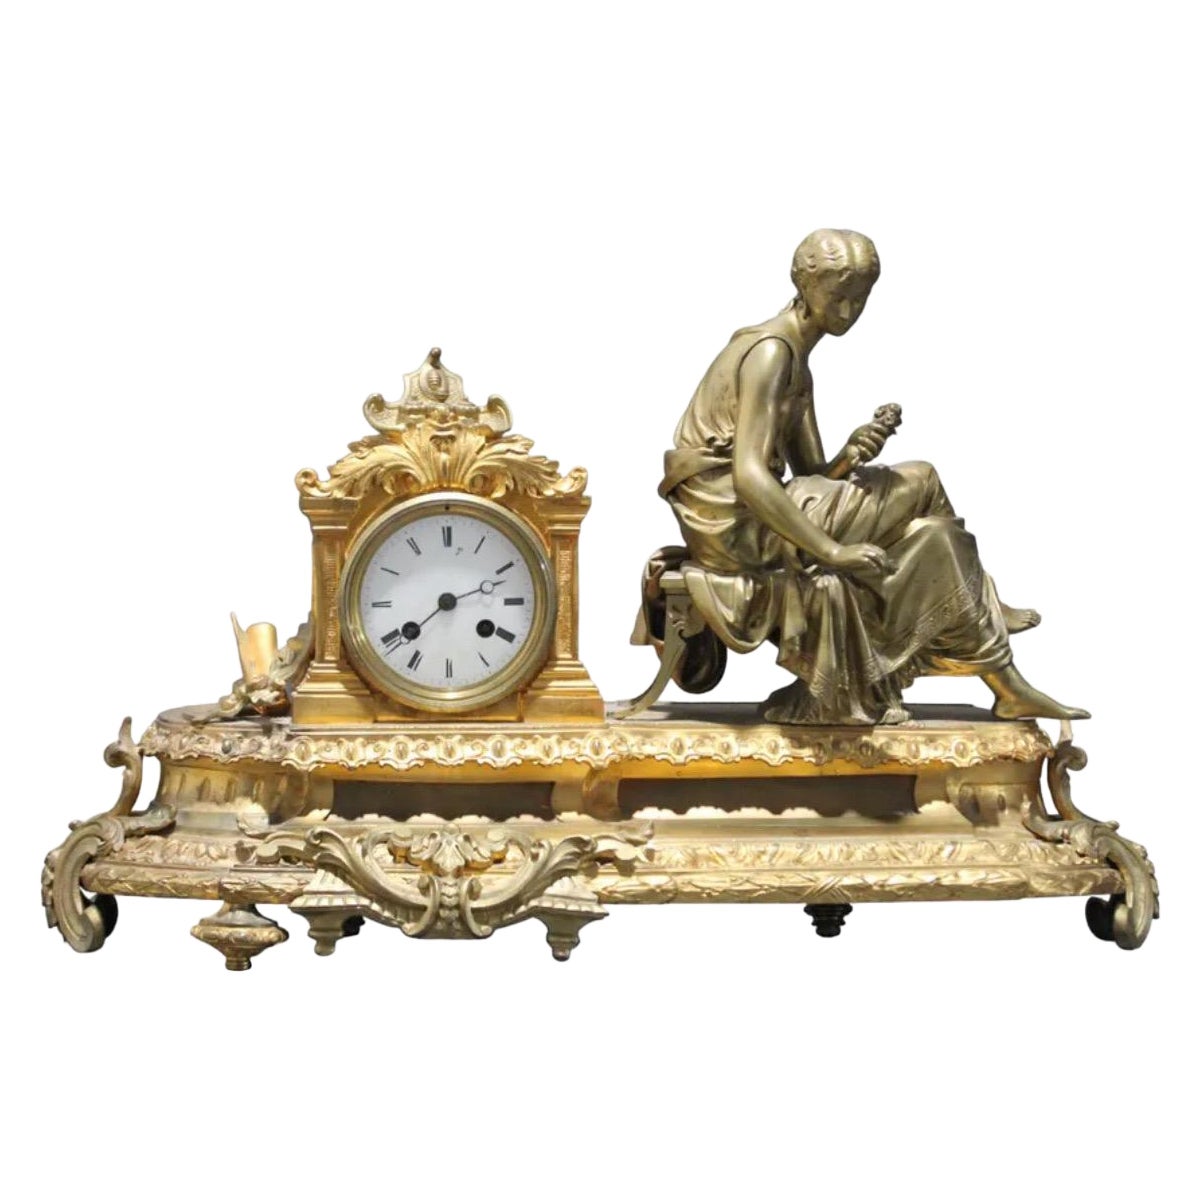 Exceptionnelle horloge française ancienne en bronze des années 1860-1890